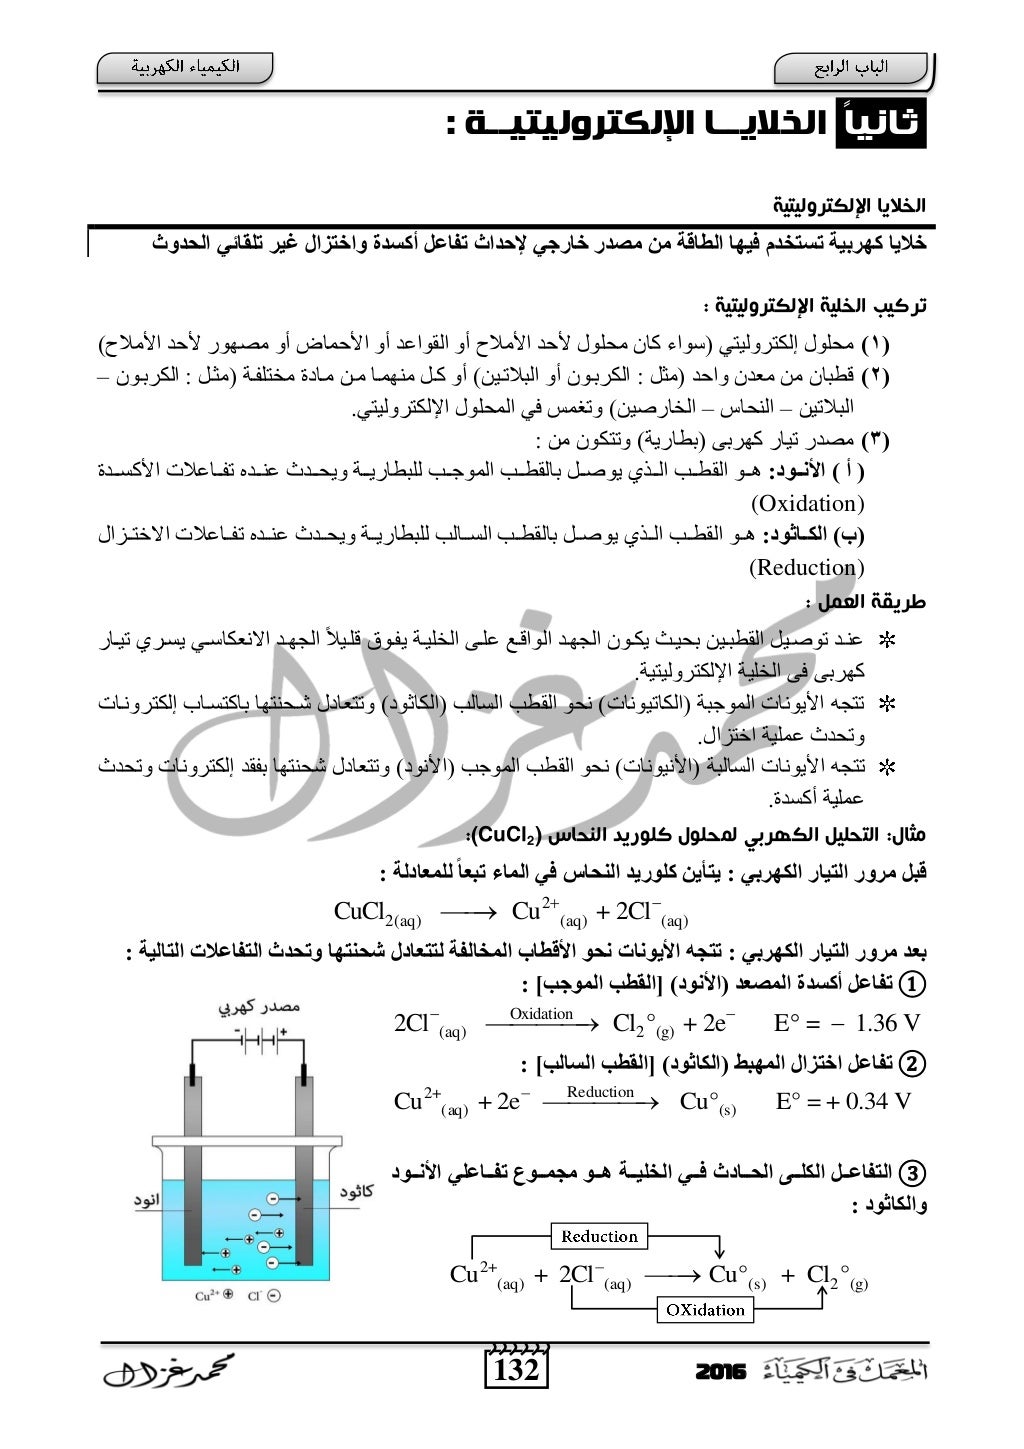 الكيمياء الكهربية للصف الثالث الثانوي أ- محمد غزال - ثانوية خمس نجوم 2016